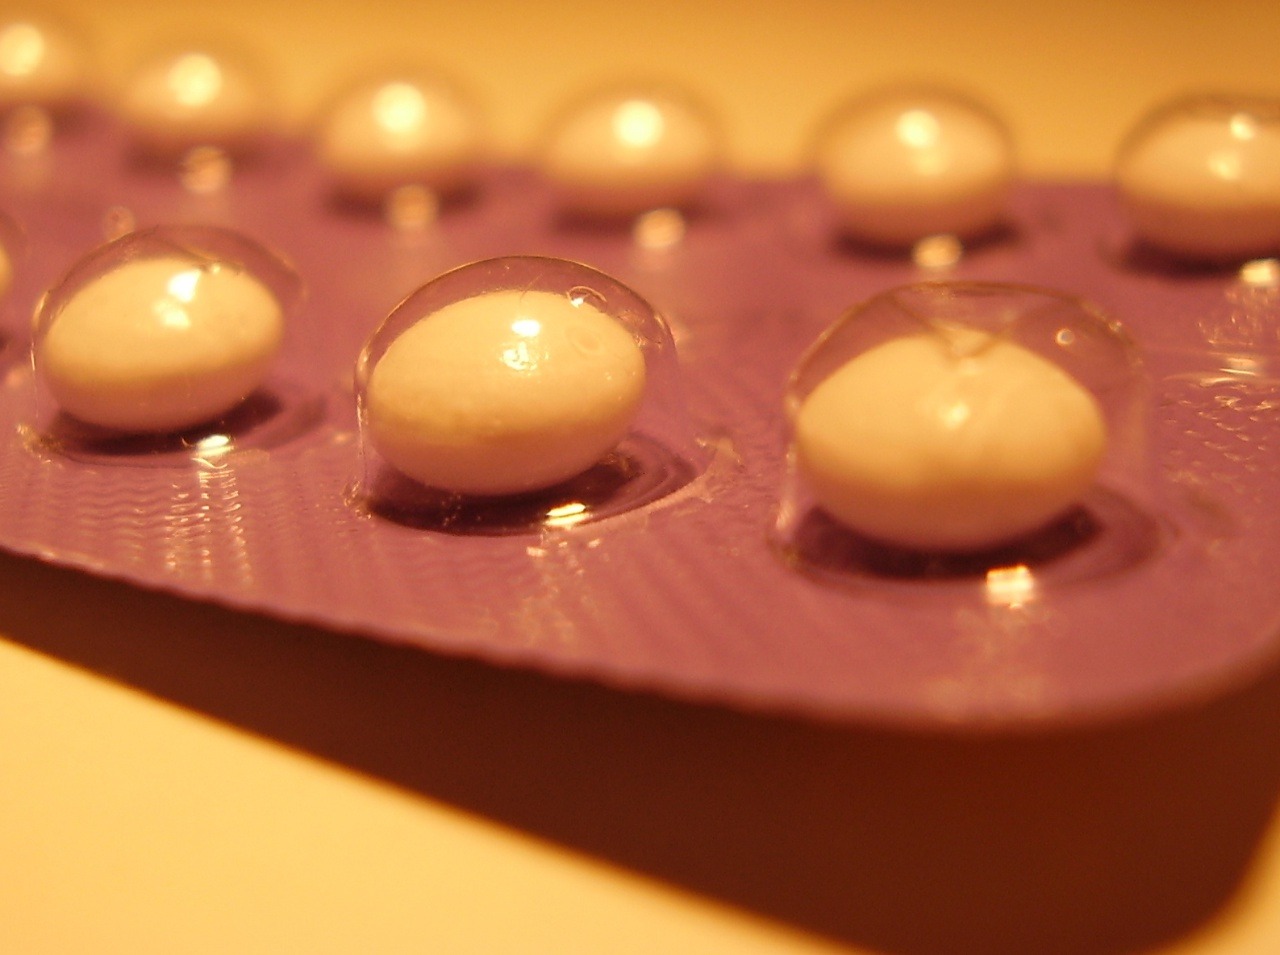 Neužívajte antikoncepčné tabletky viac ako trik roky, inak vám hrozí glaukóm.